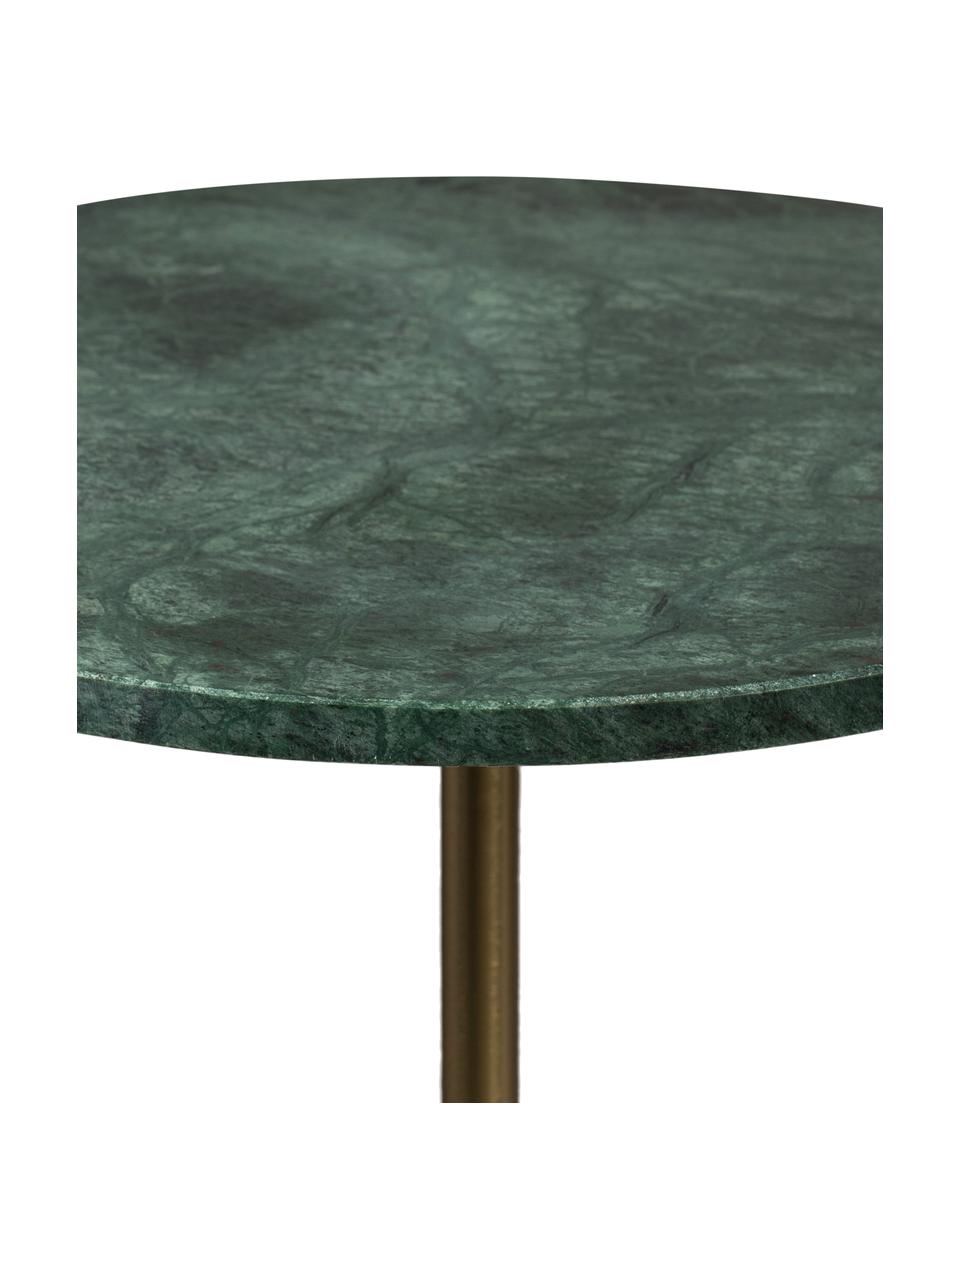 Okragły stolik pomocniczy z marmuru Gunnar, Noga: metal malowany proszkowo, Zielony, marmurowy, Ø 38 x W 65 cm